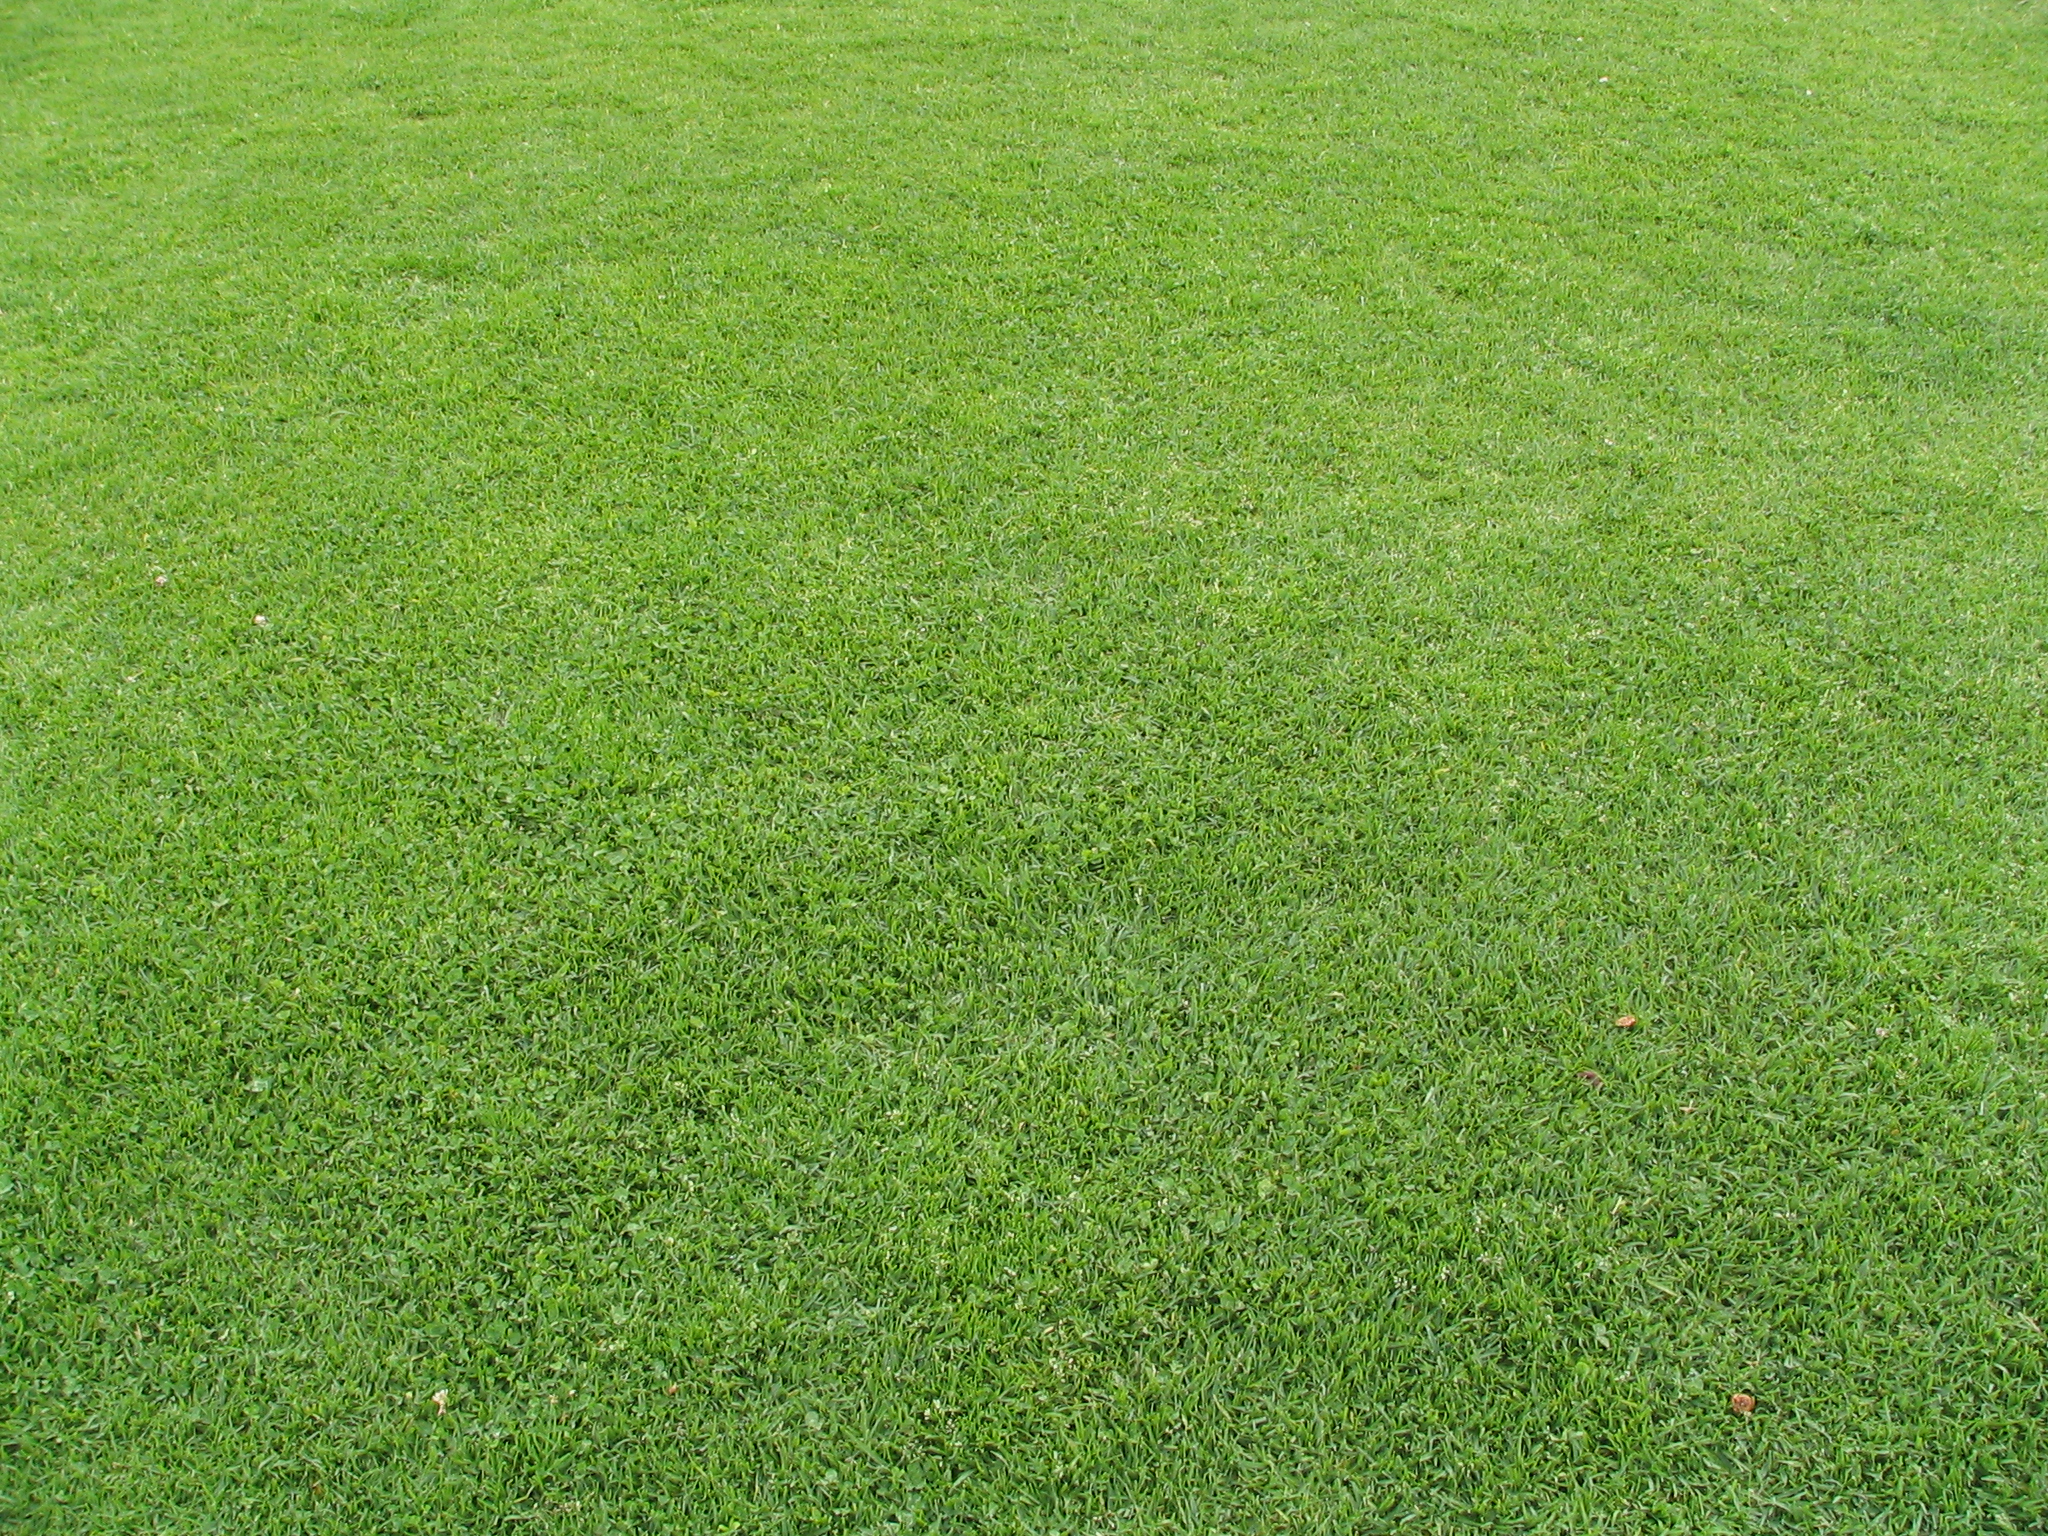 Grass in Pantoja Park | photo page - everystockphoto